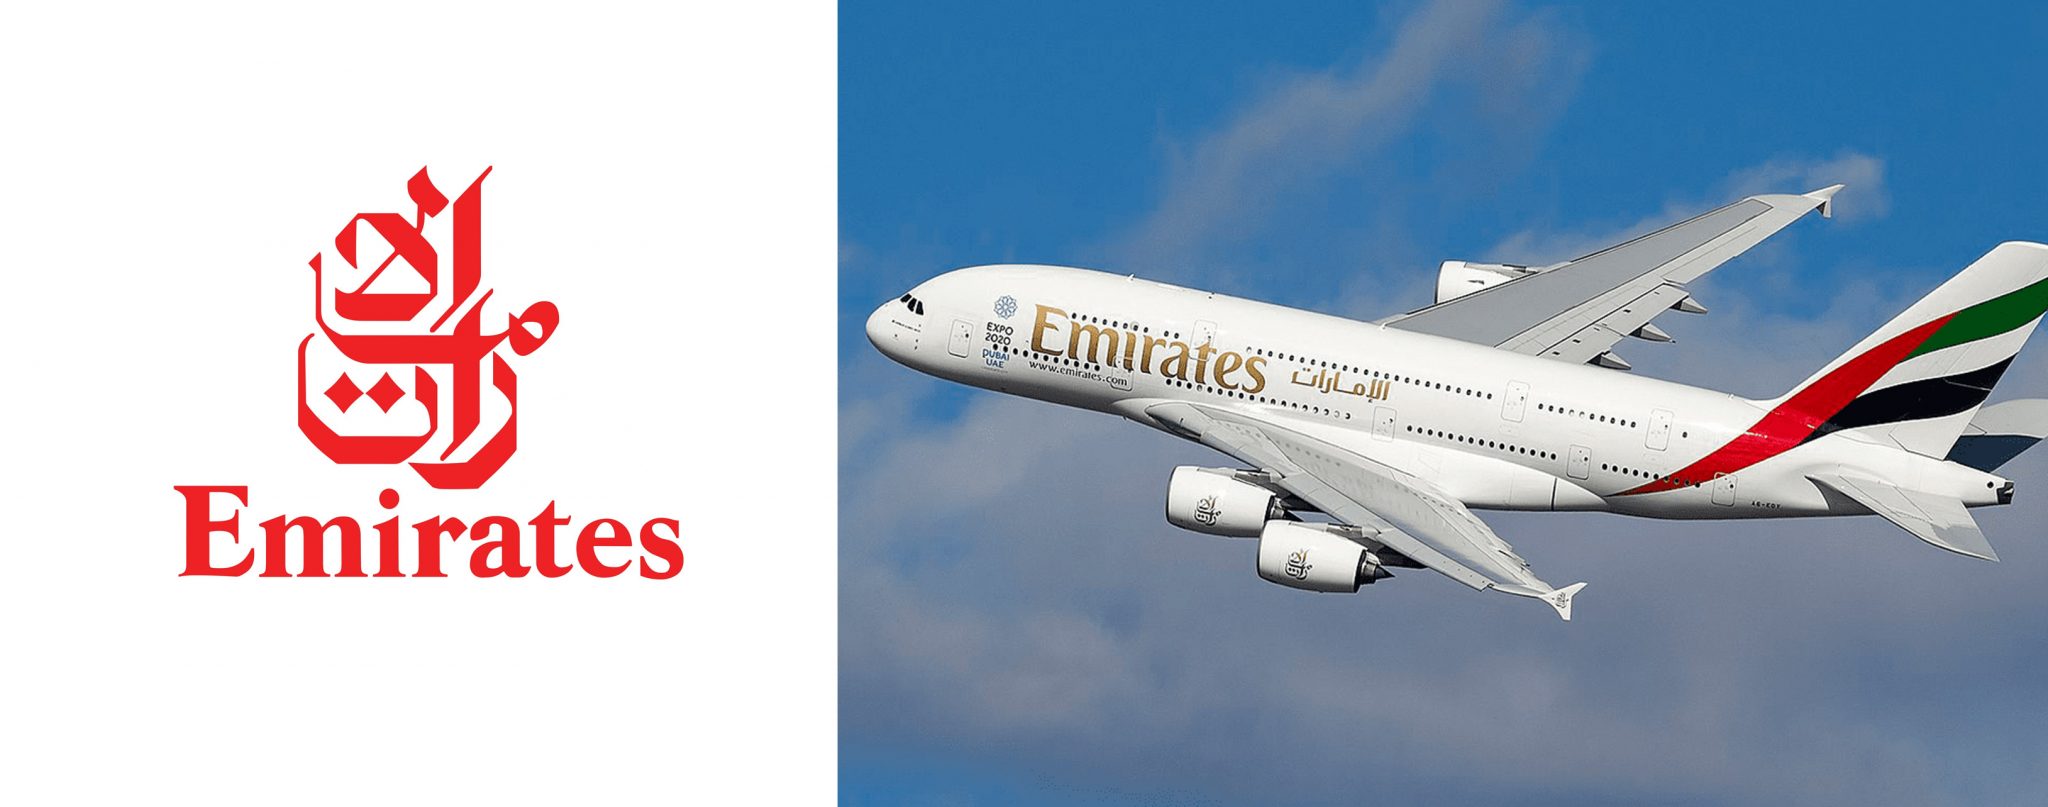 Emirates airline JFK airport